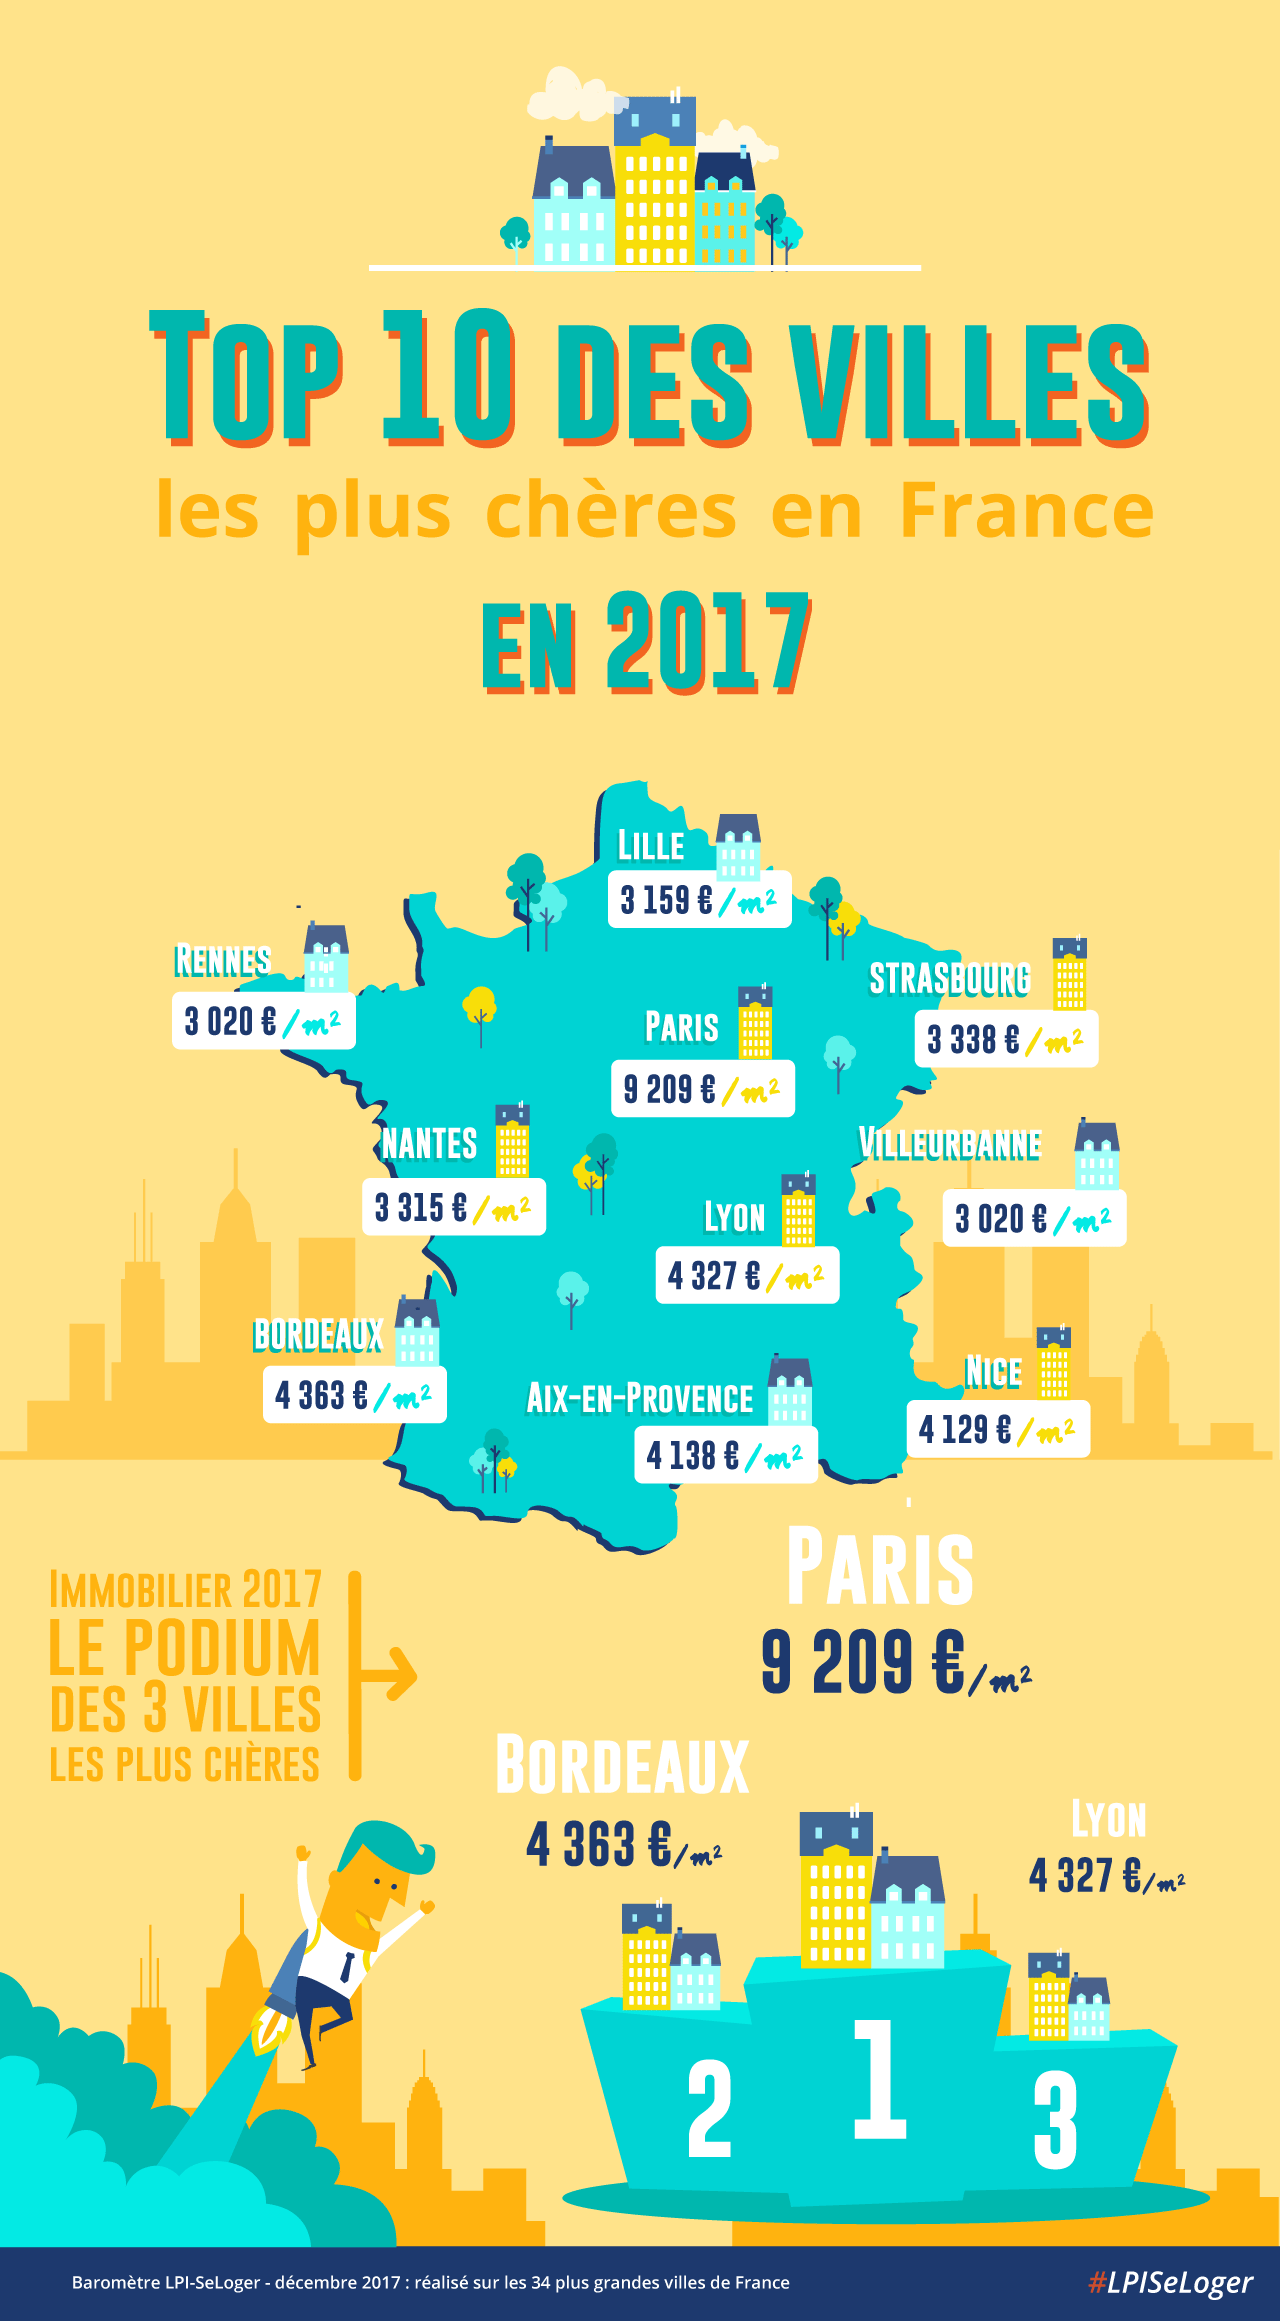 Top 10 des villes les plus chères de France en 2017